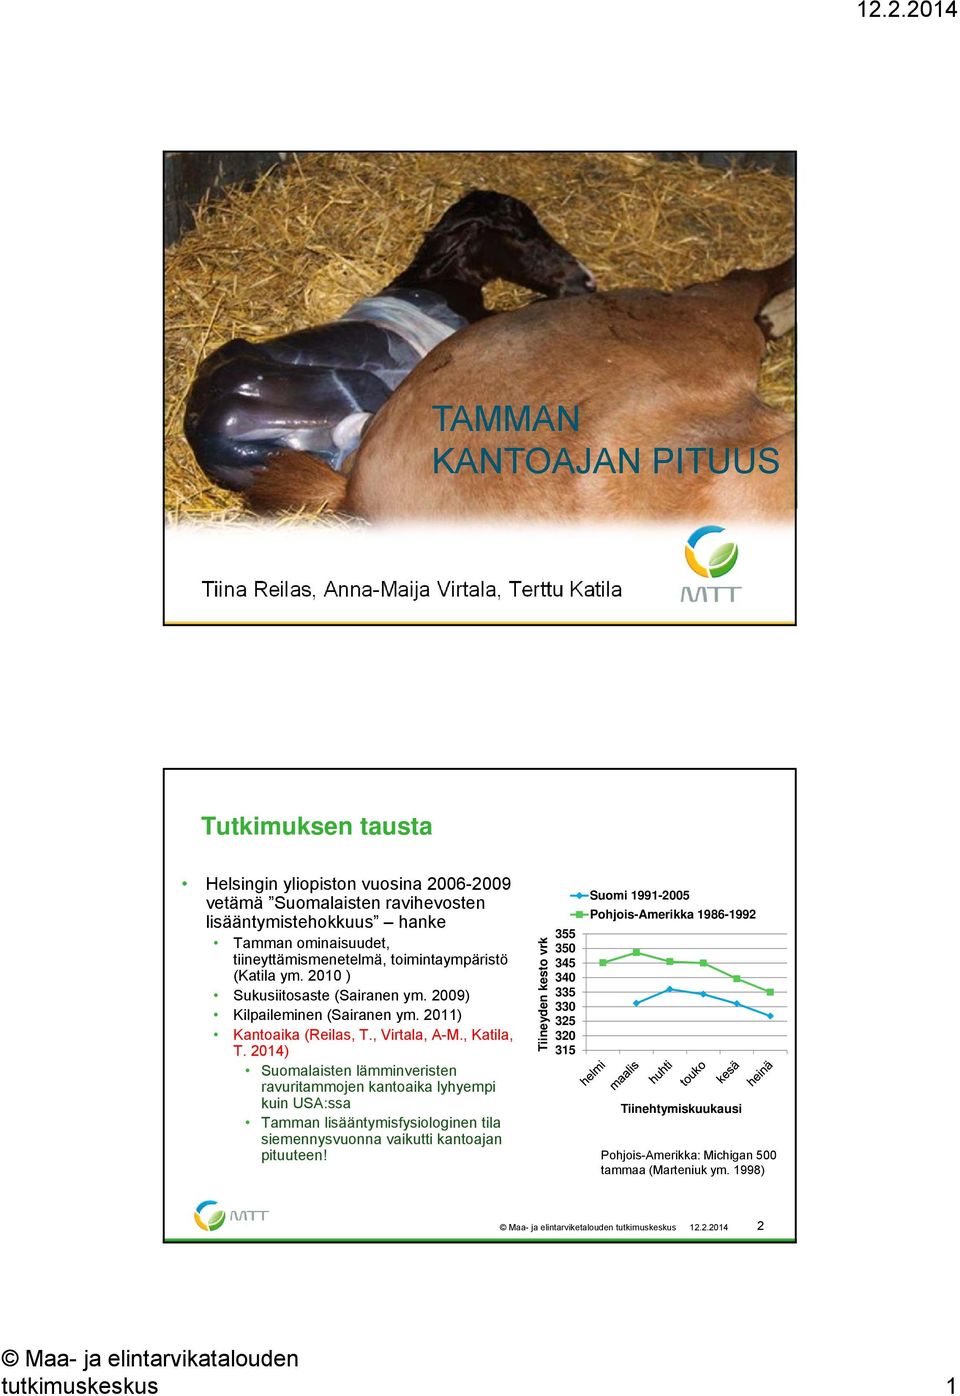 , Katila, T. 214) Suomalaisten lämminveristen ravuritammojen kantoaika lyhyempi kuin USA:ssa Tamman lisääntymisfysiologinen tila siemennysvuonna vaikutti kantoajan pituuteen!